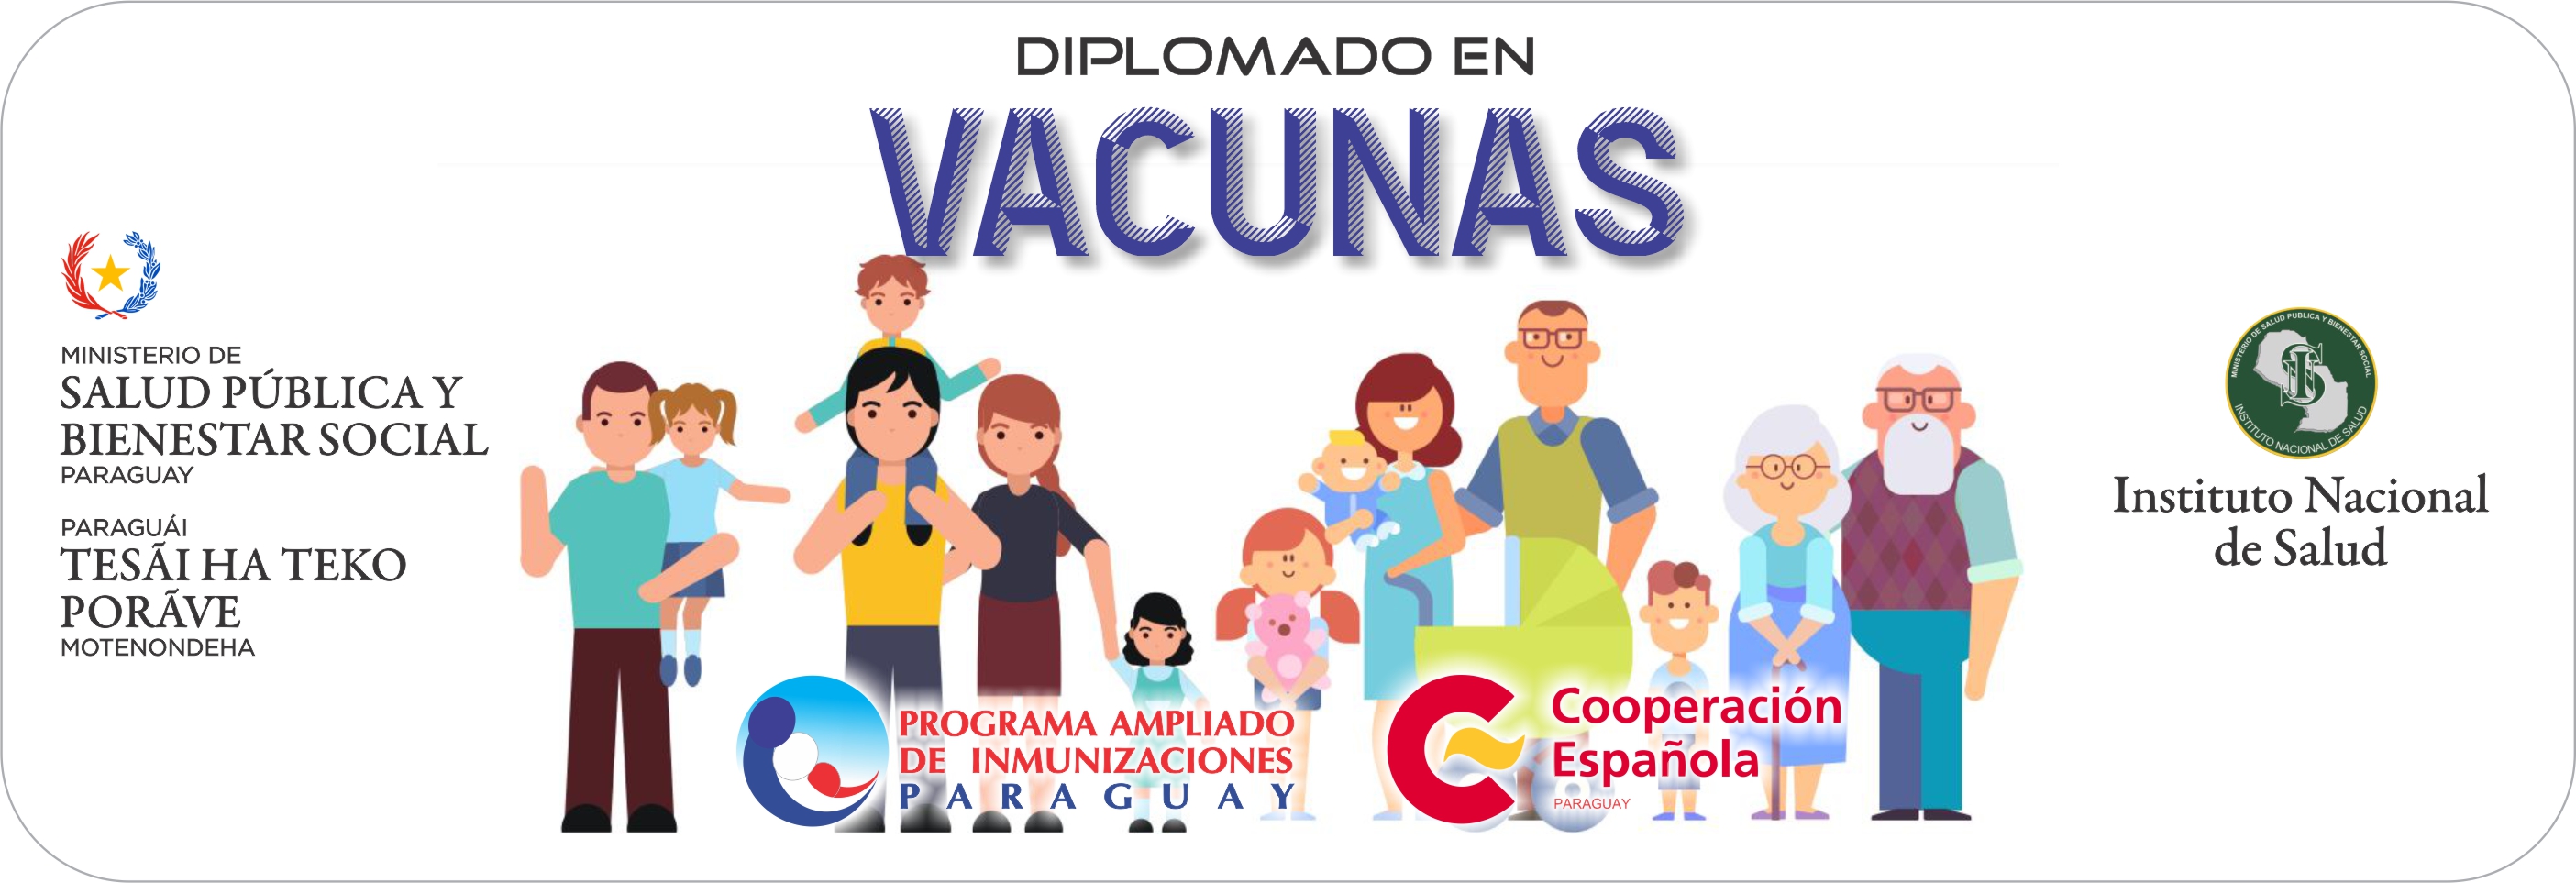 C II - Mejora de atención primaria a través de apoyo al PAI del Paraguay en todo el territorio Nacional